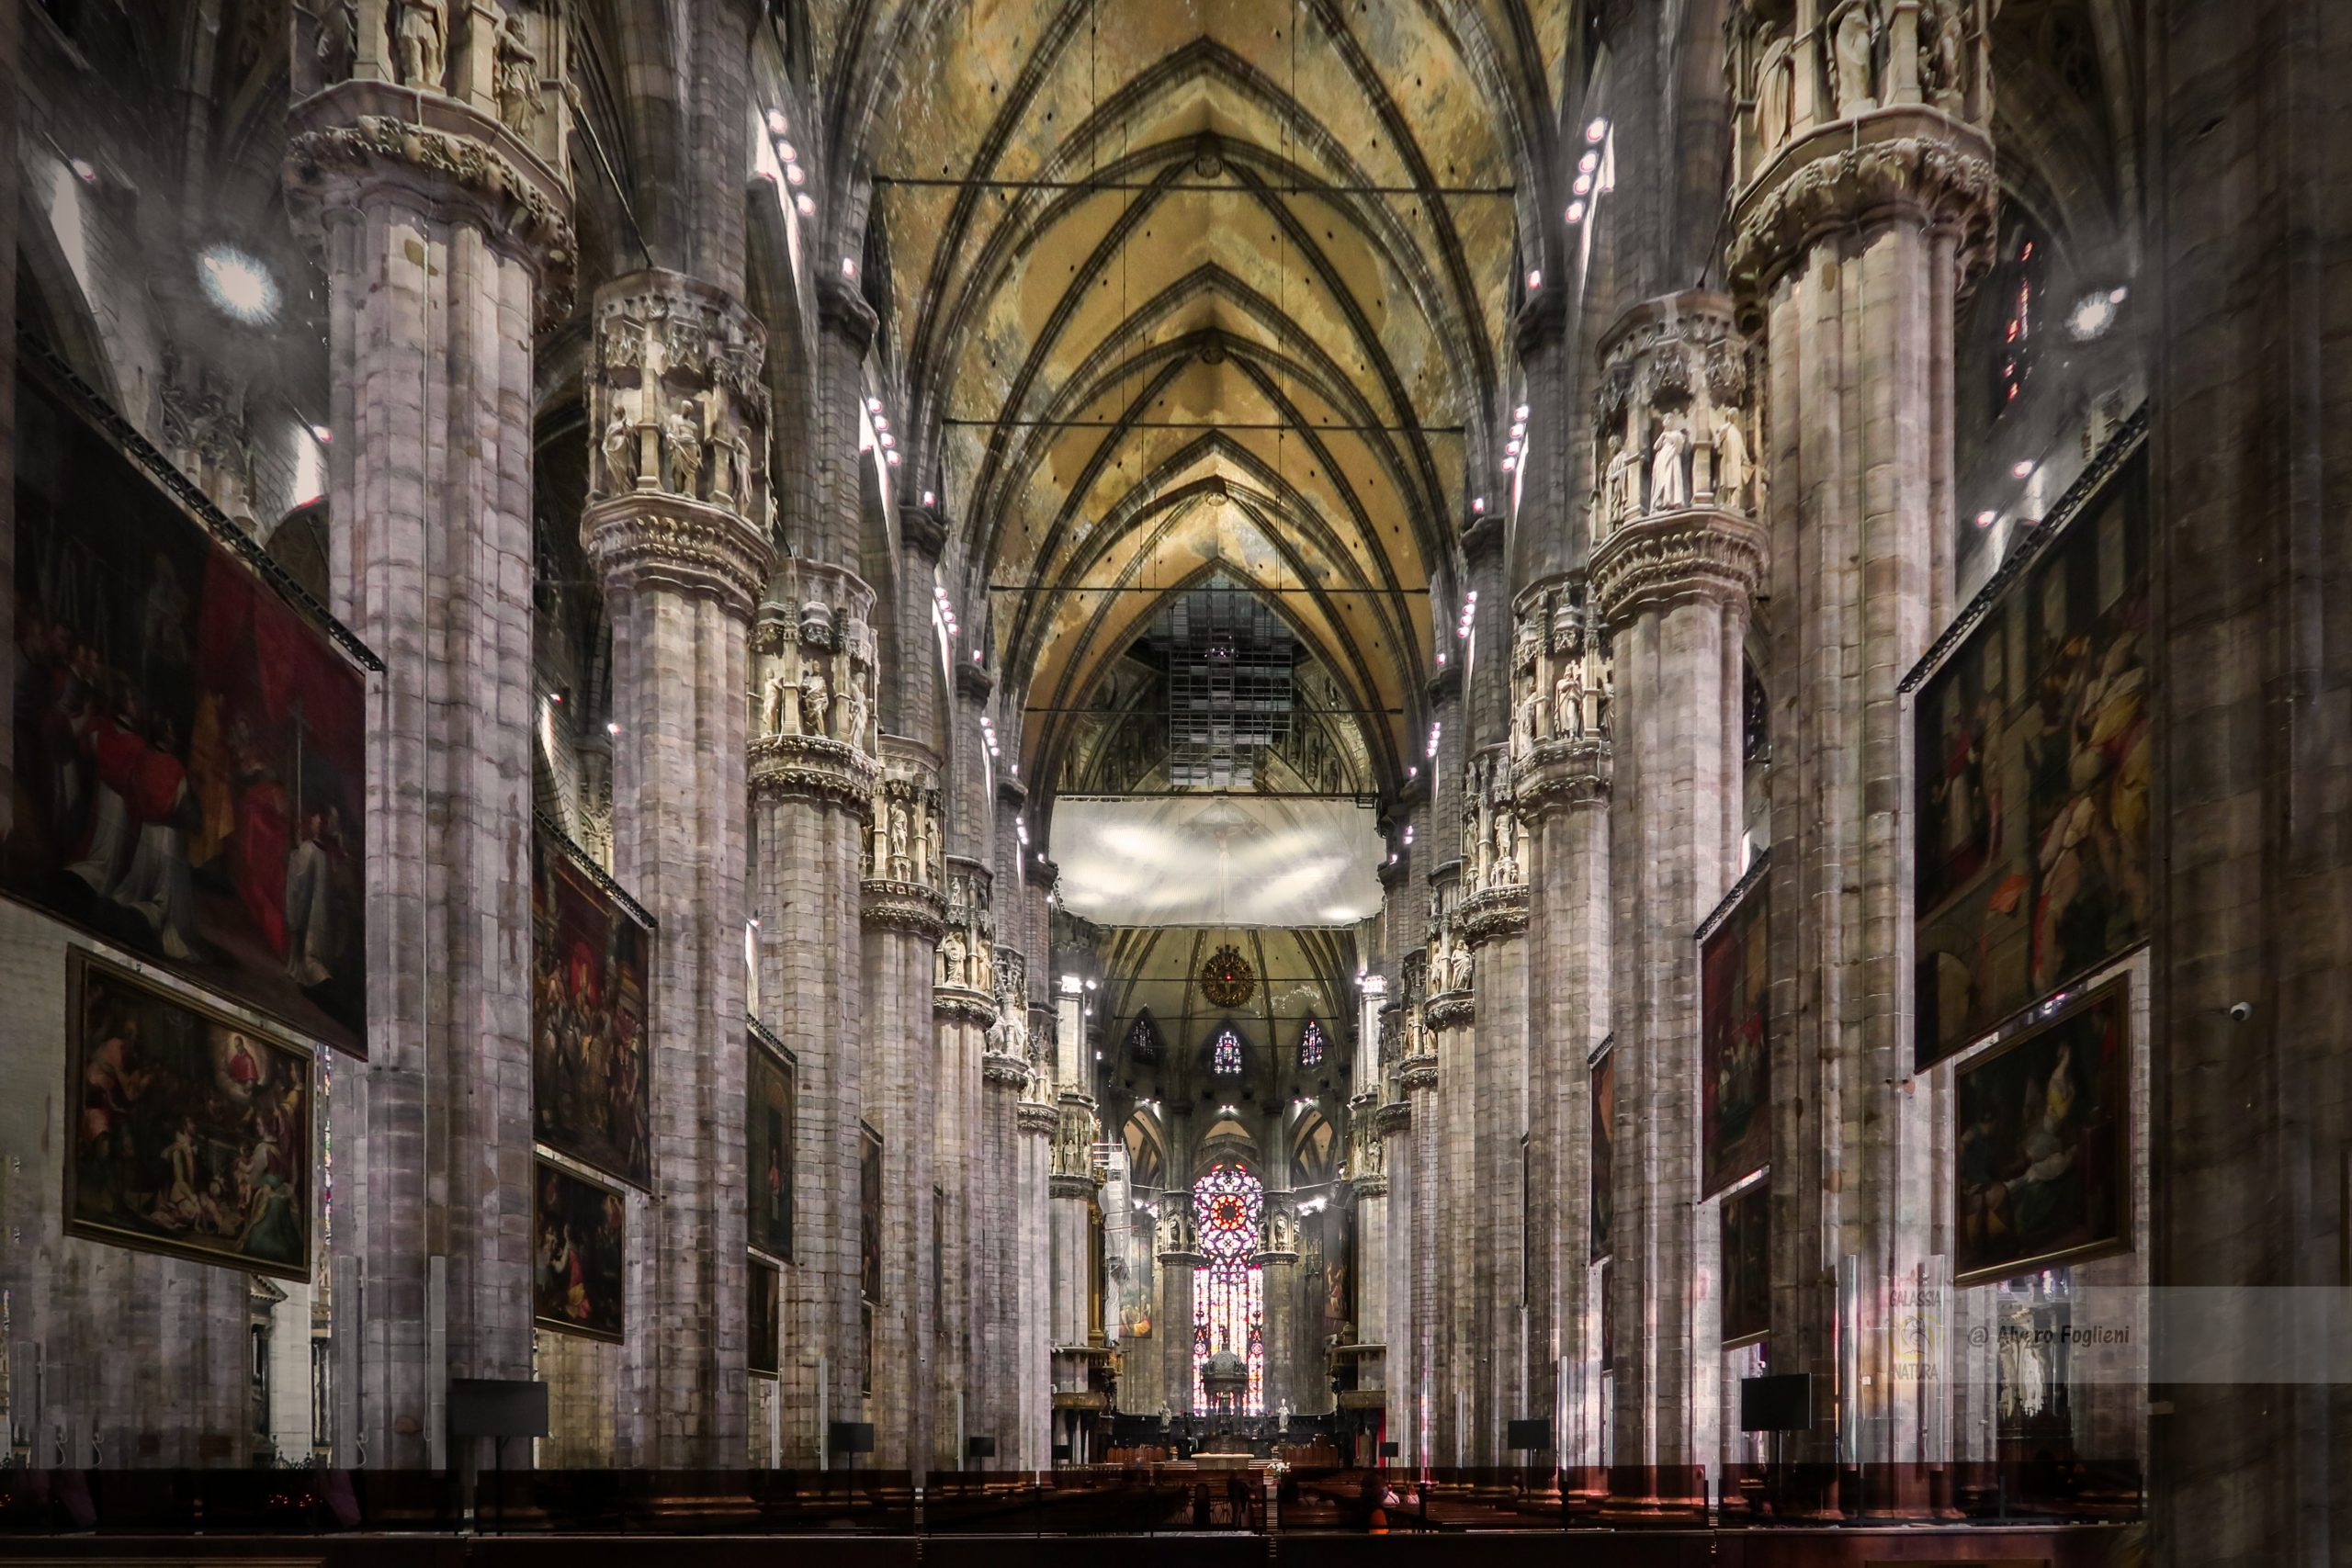 Immortala le Navate del Duomo di Milano; Consigli per Fotografie a Milano; fotografia grandangolare, interni cattedrale, fotografia architettonica.